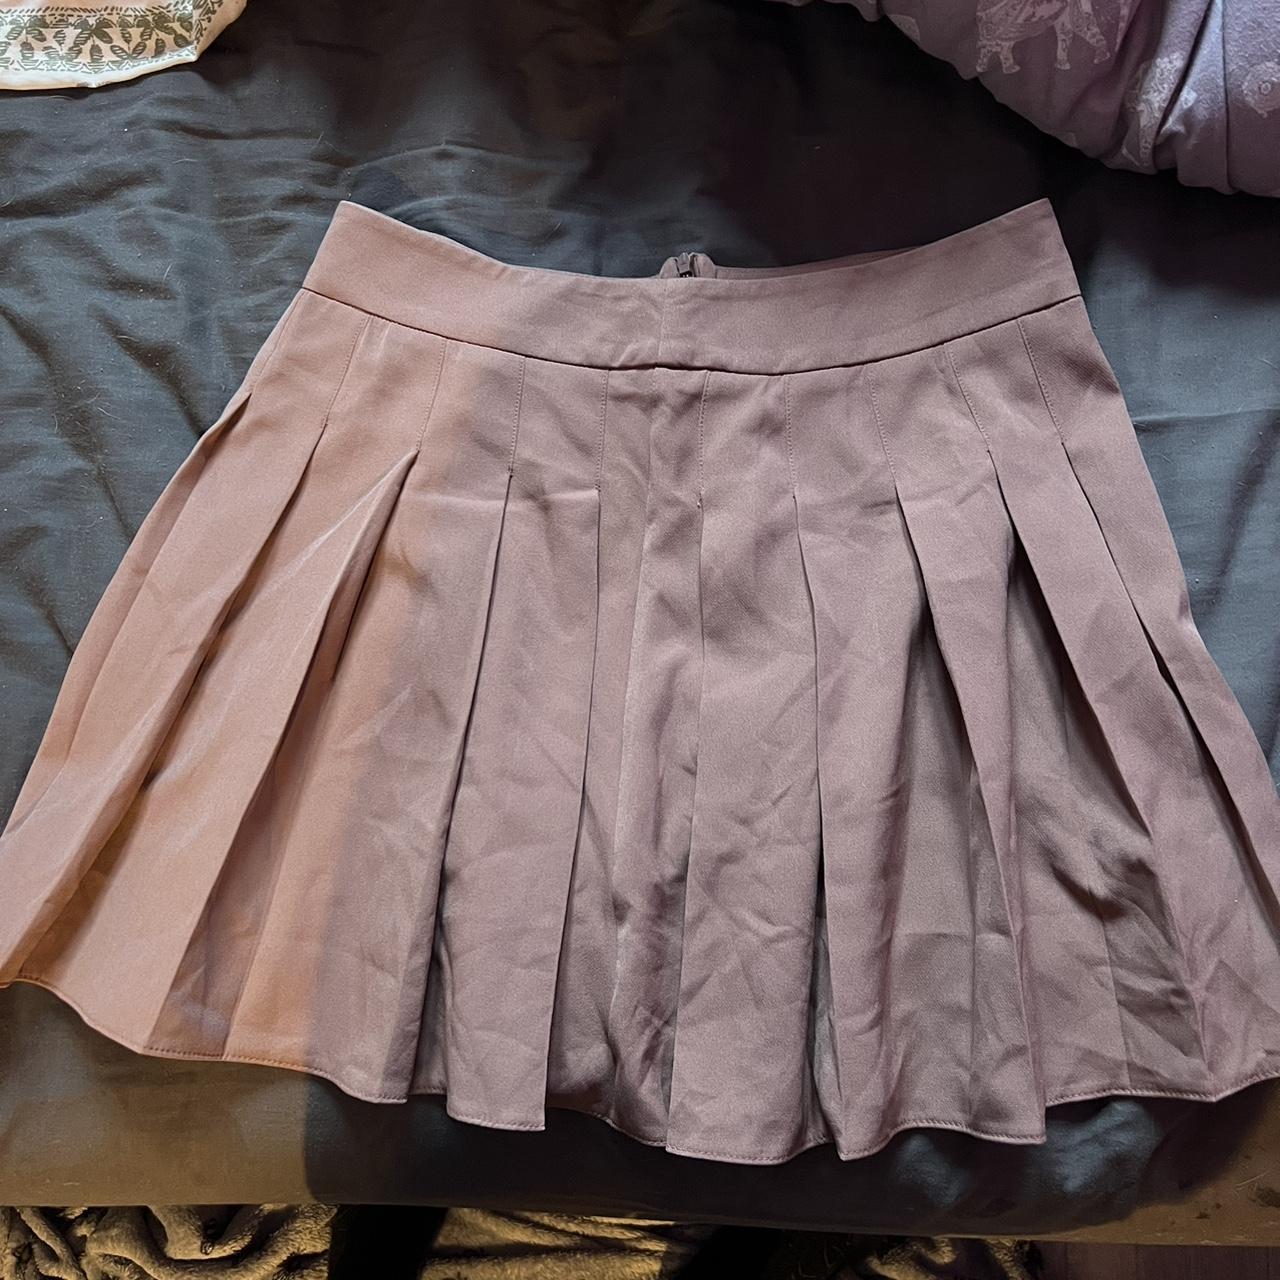 brown tennis skirt brand new never been worn just... - Depop